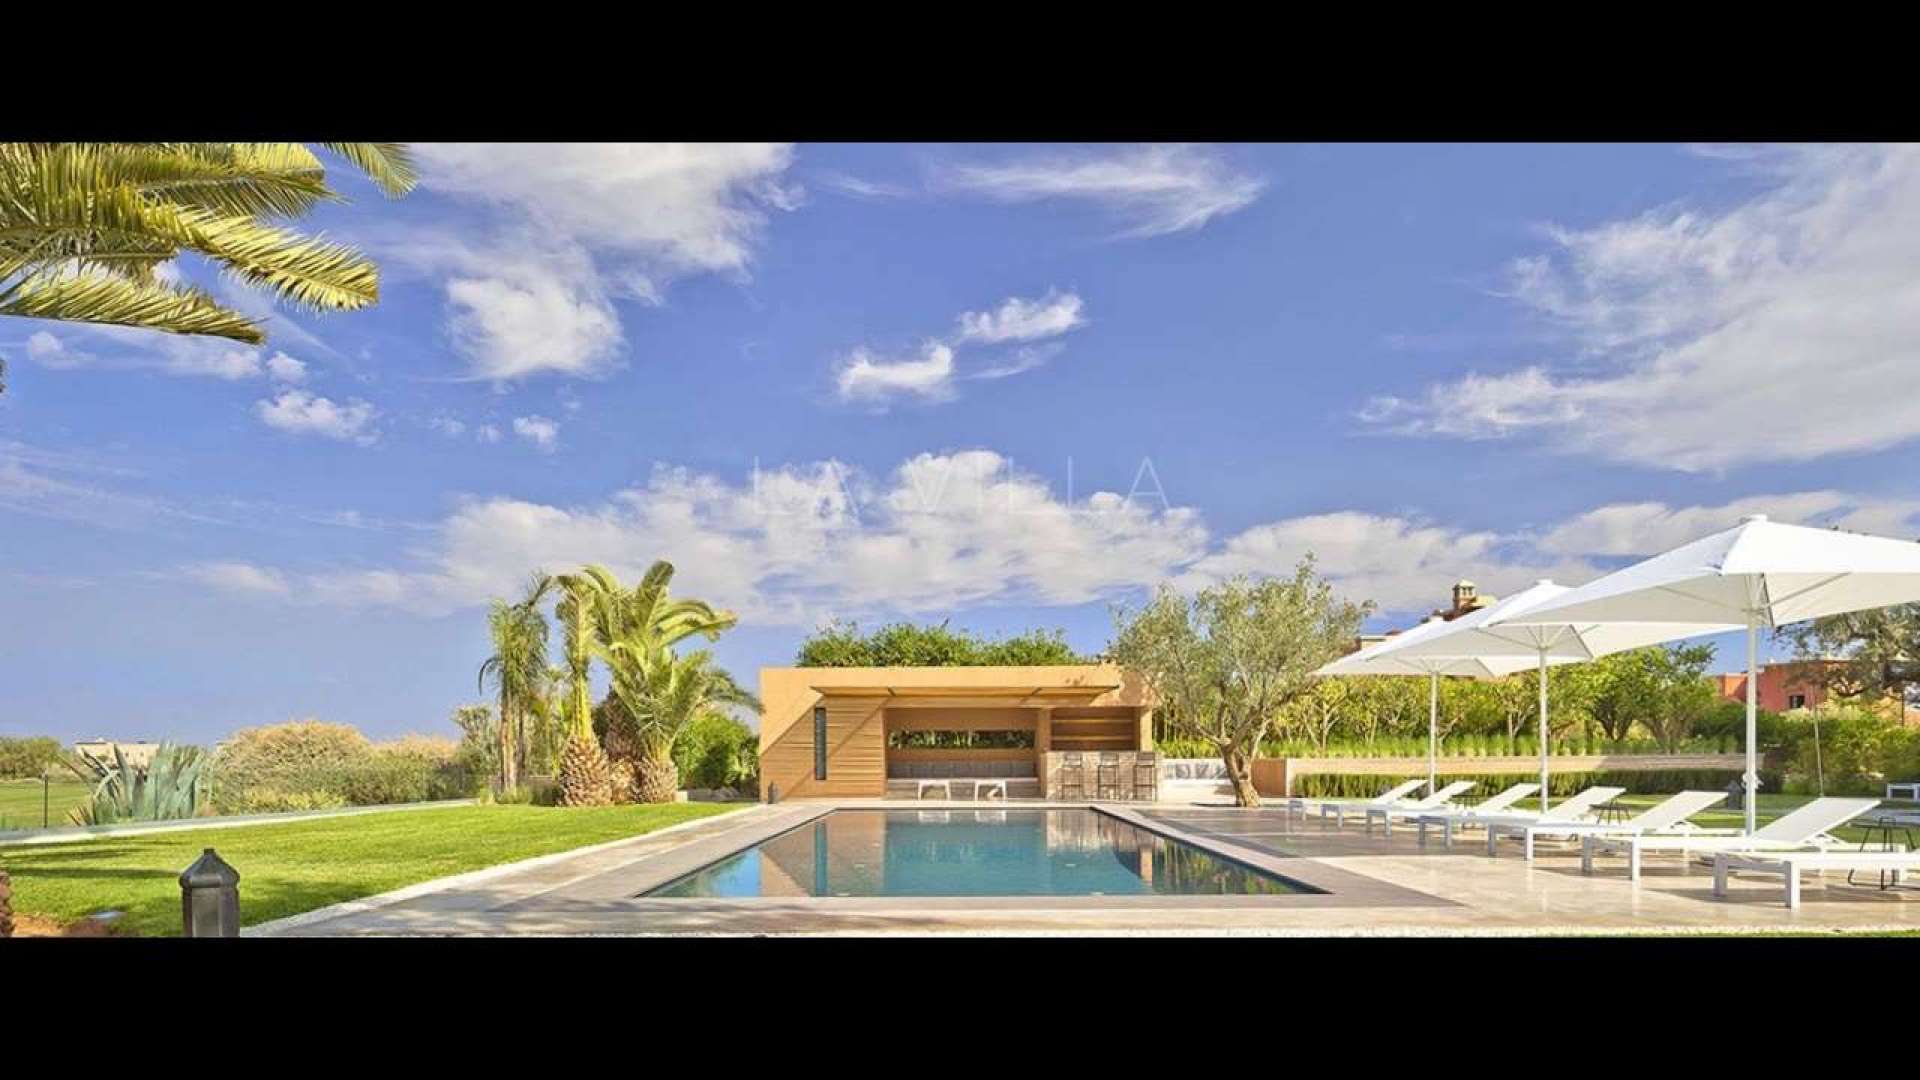 Location de vacances,Villa,Location saisonnière Villa sur golf de luxe de 5 suites en première ligne sur golf à Marrakech,Marrakech,Route Amizmiz